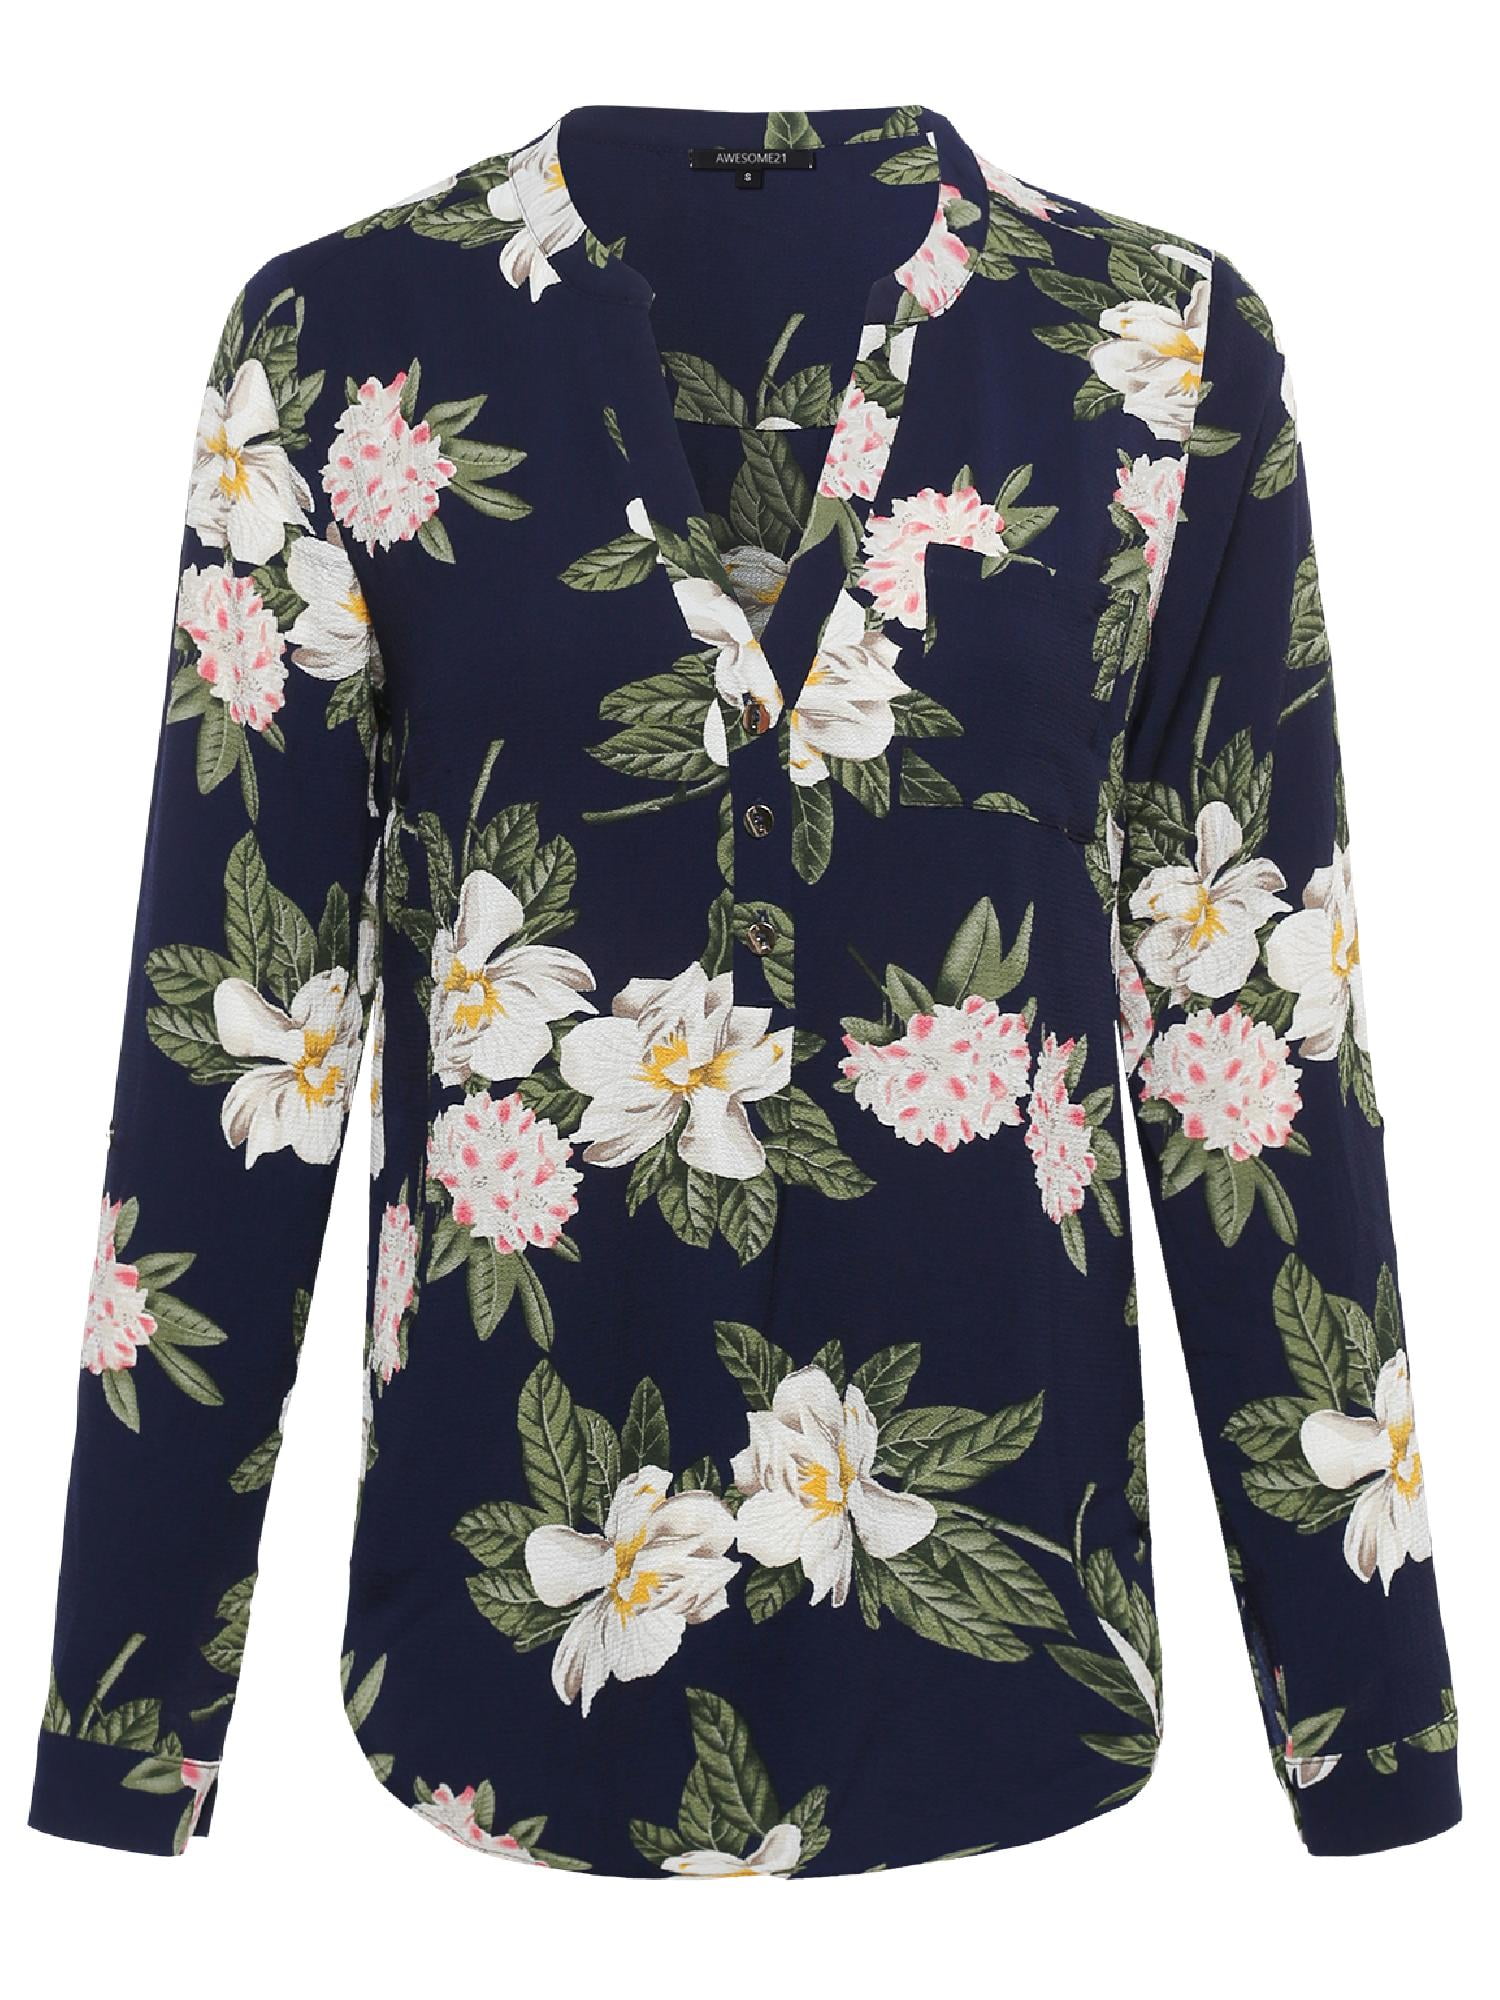 Women's Floral Henley Blouse Dress Shirt w/ Gold Buttons - Walmart.com